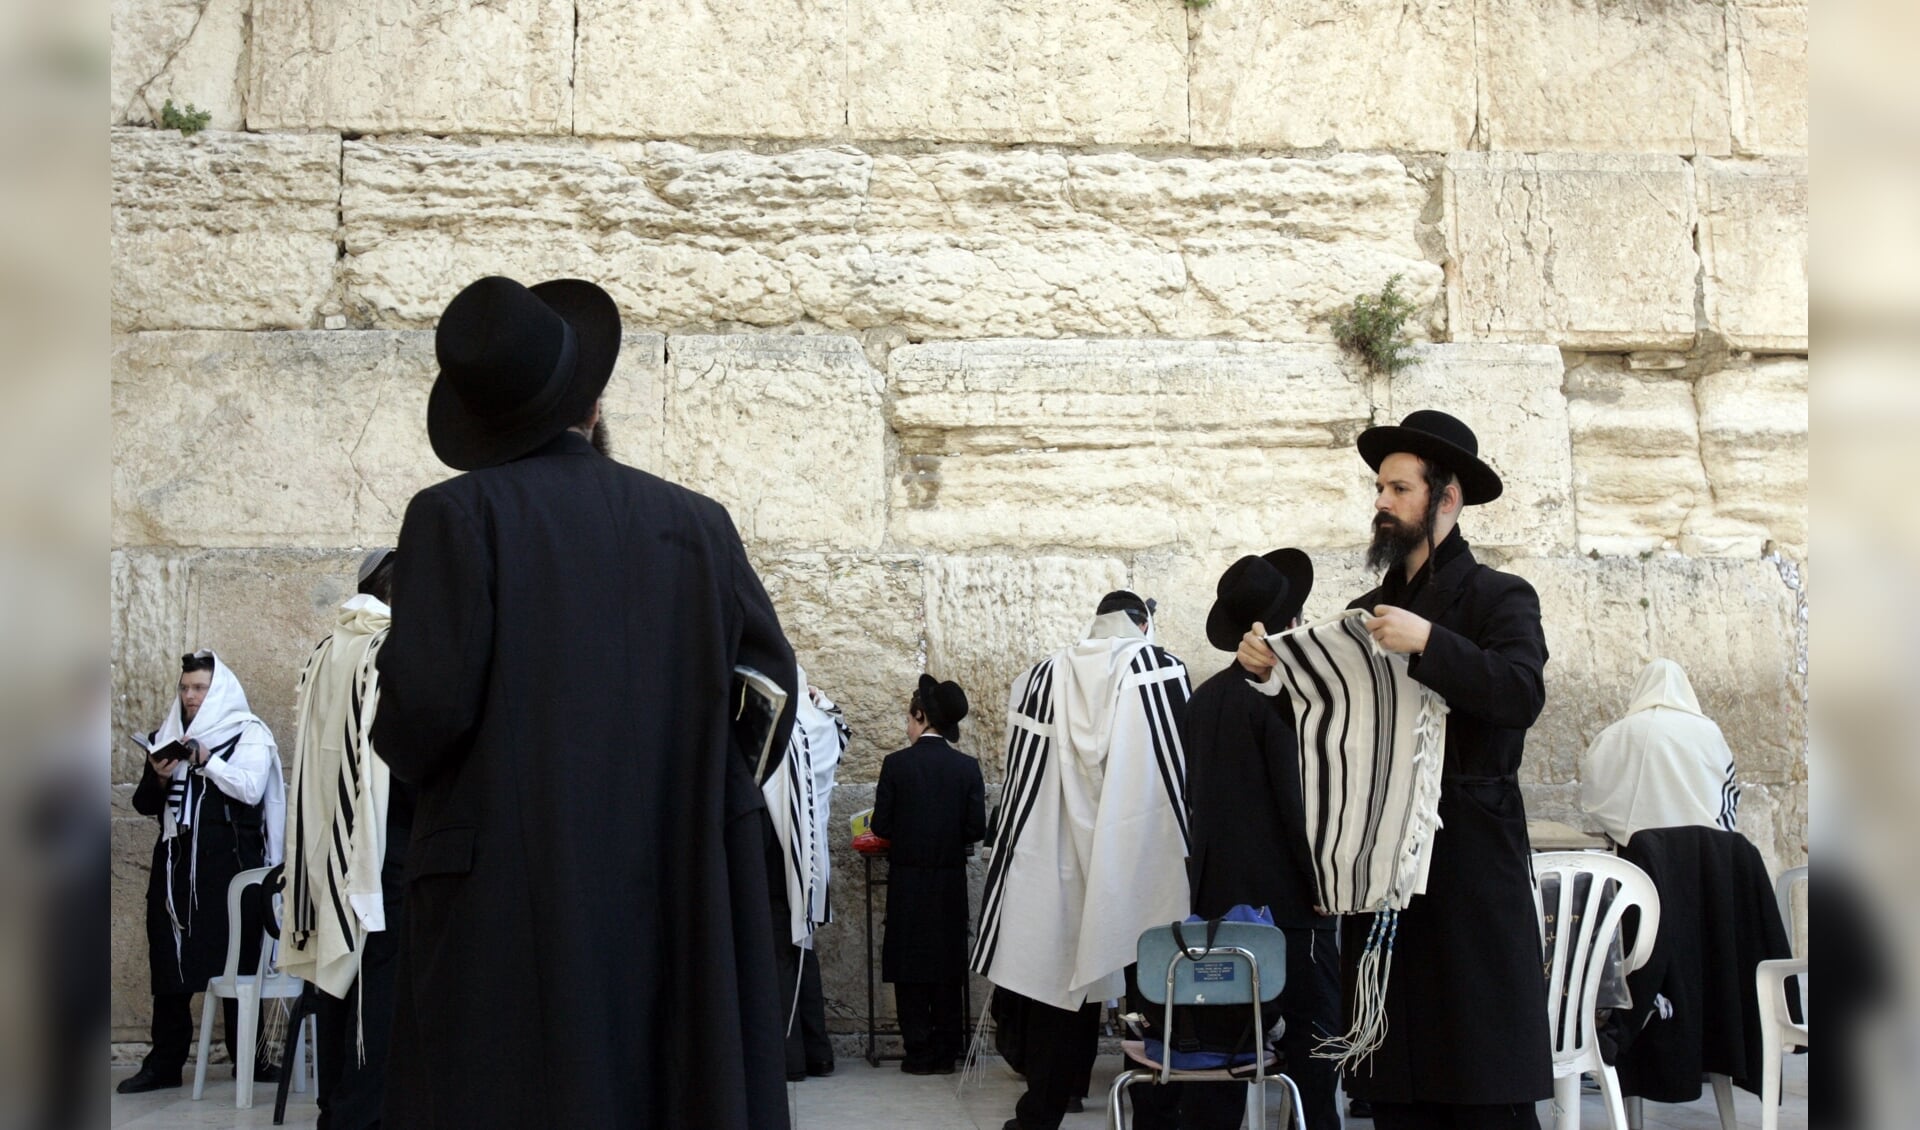 Orthodoxe joden bij de klaagmuur in Jeruzalem. In die stad zou een undercoverevangelist werken, die zich voordoet als rabbijn.